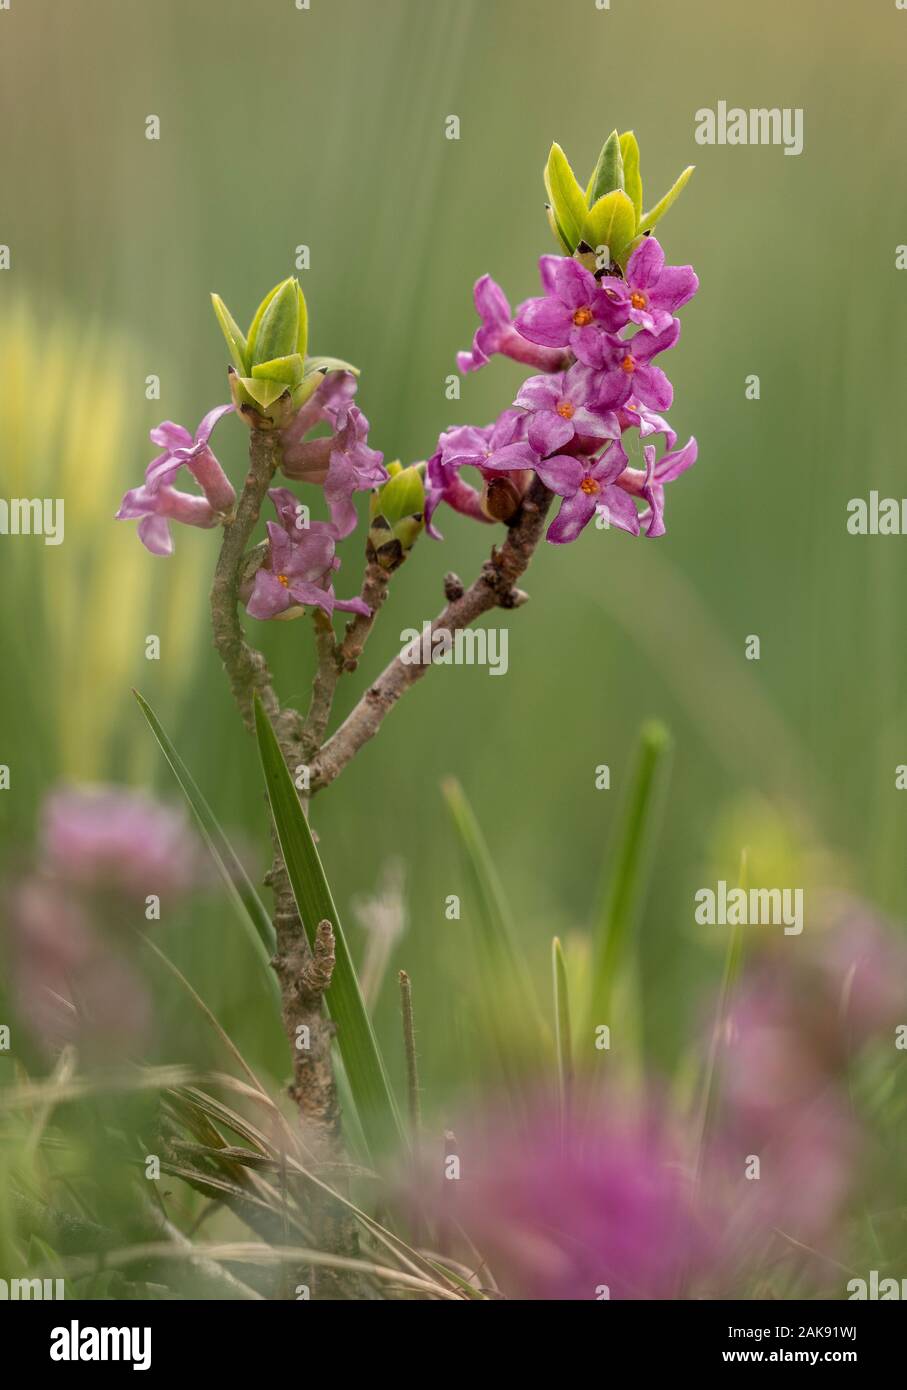 Mezereon, Daphne mezereum, in flower in early spring. Stock Photo